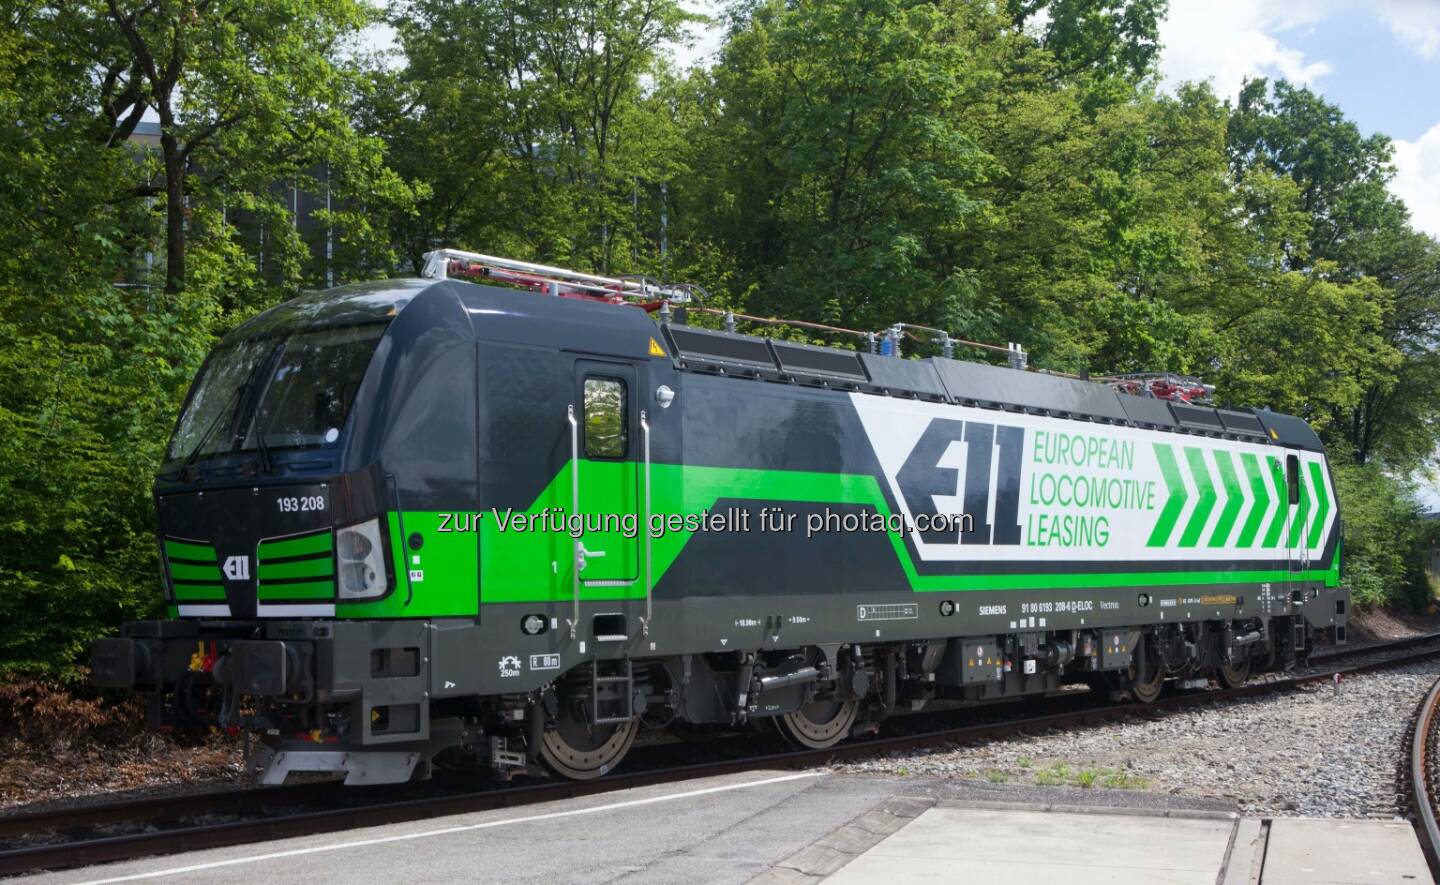 Vectron-Lokomotive : European Locomotive Leasing (ELL), ein Anbieter von Komplettlösungen für das Leasing von Lokomotiven im kontinentaleuropäischen Güter- und Personenverkehr bestellt 50. Vectron-Lokomotive bei Siemens : 
Fotocredit: Siemens AG